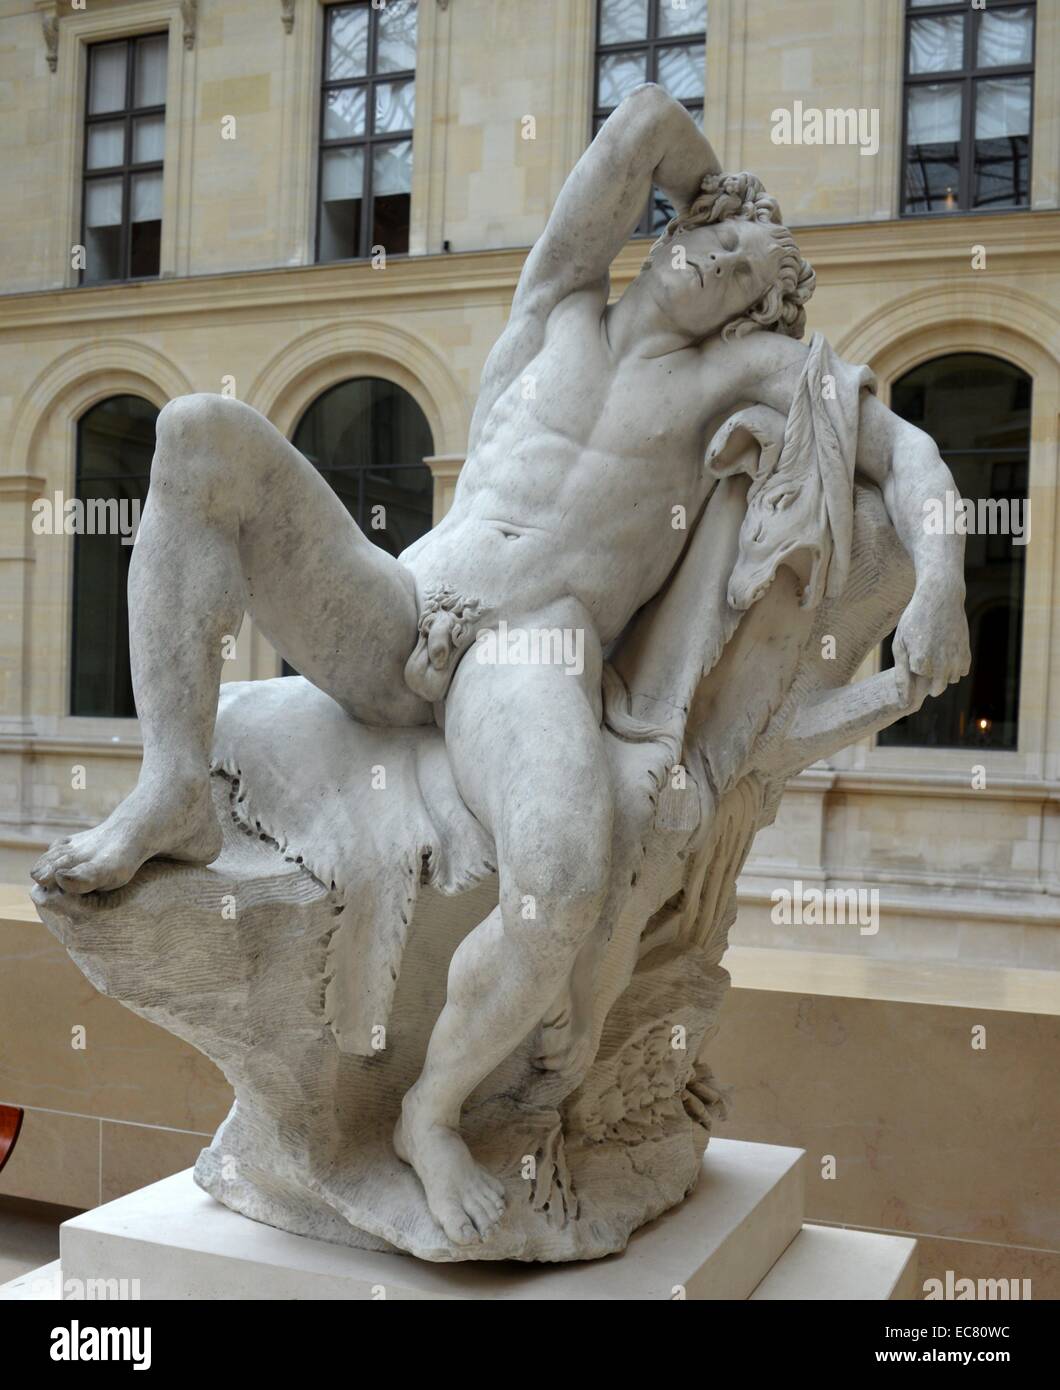 Estatua de mármol de un fauno "dormidos" por Edme Bouchardon (1698-1762), un escultor francés que fue estimado como el mayor escultor de su tiempo. Fecha del siglo XVII. Foto de stock